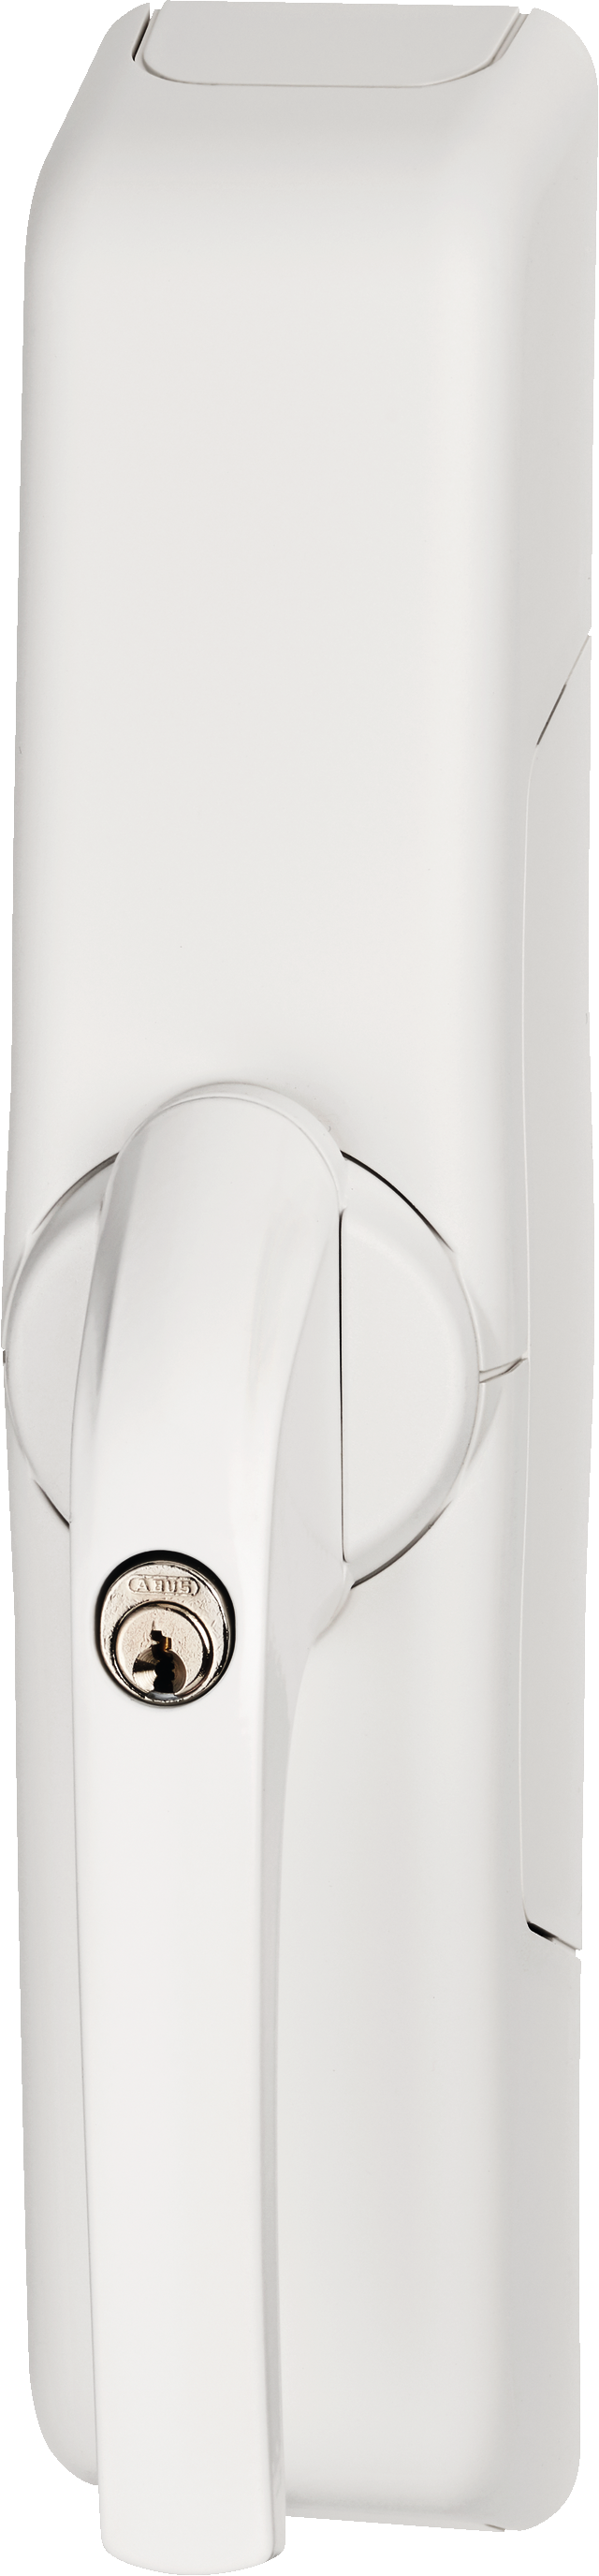 wireless window lock drive HomeTec Pro FCA3000 white oblique front view